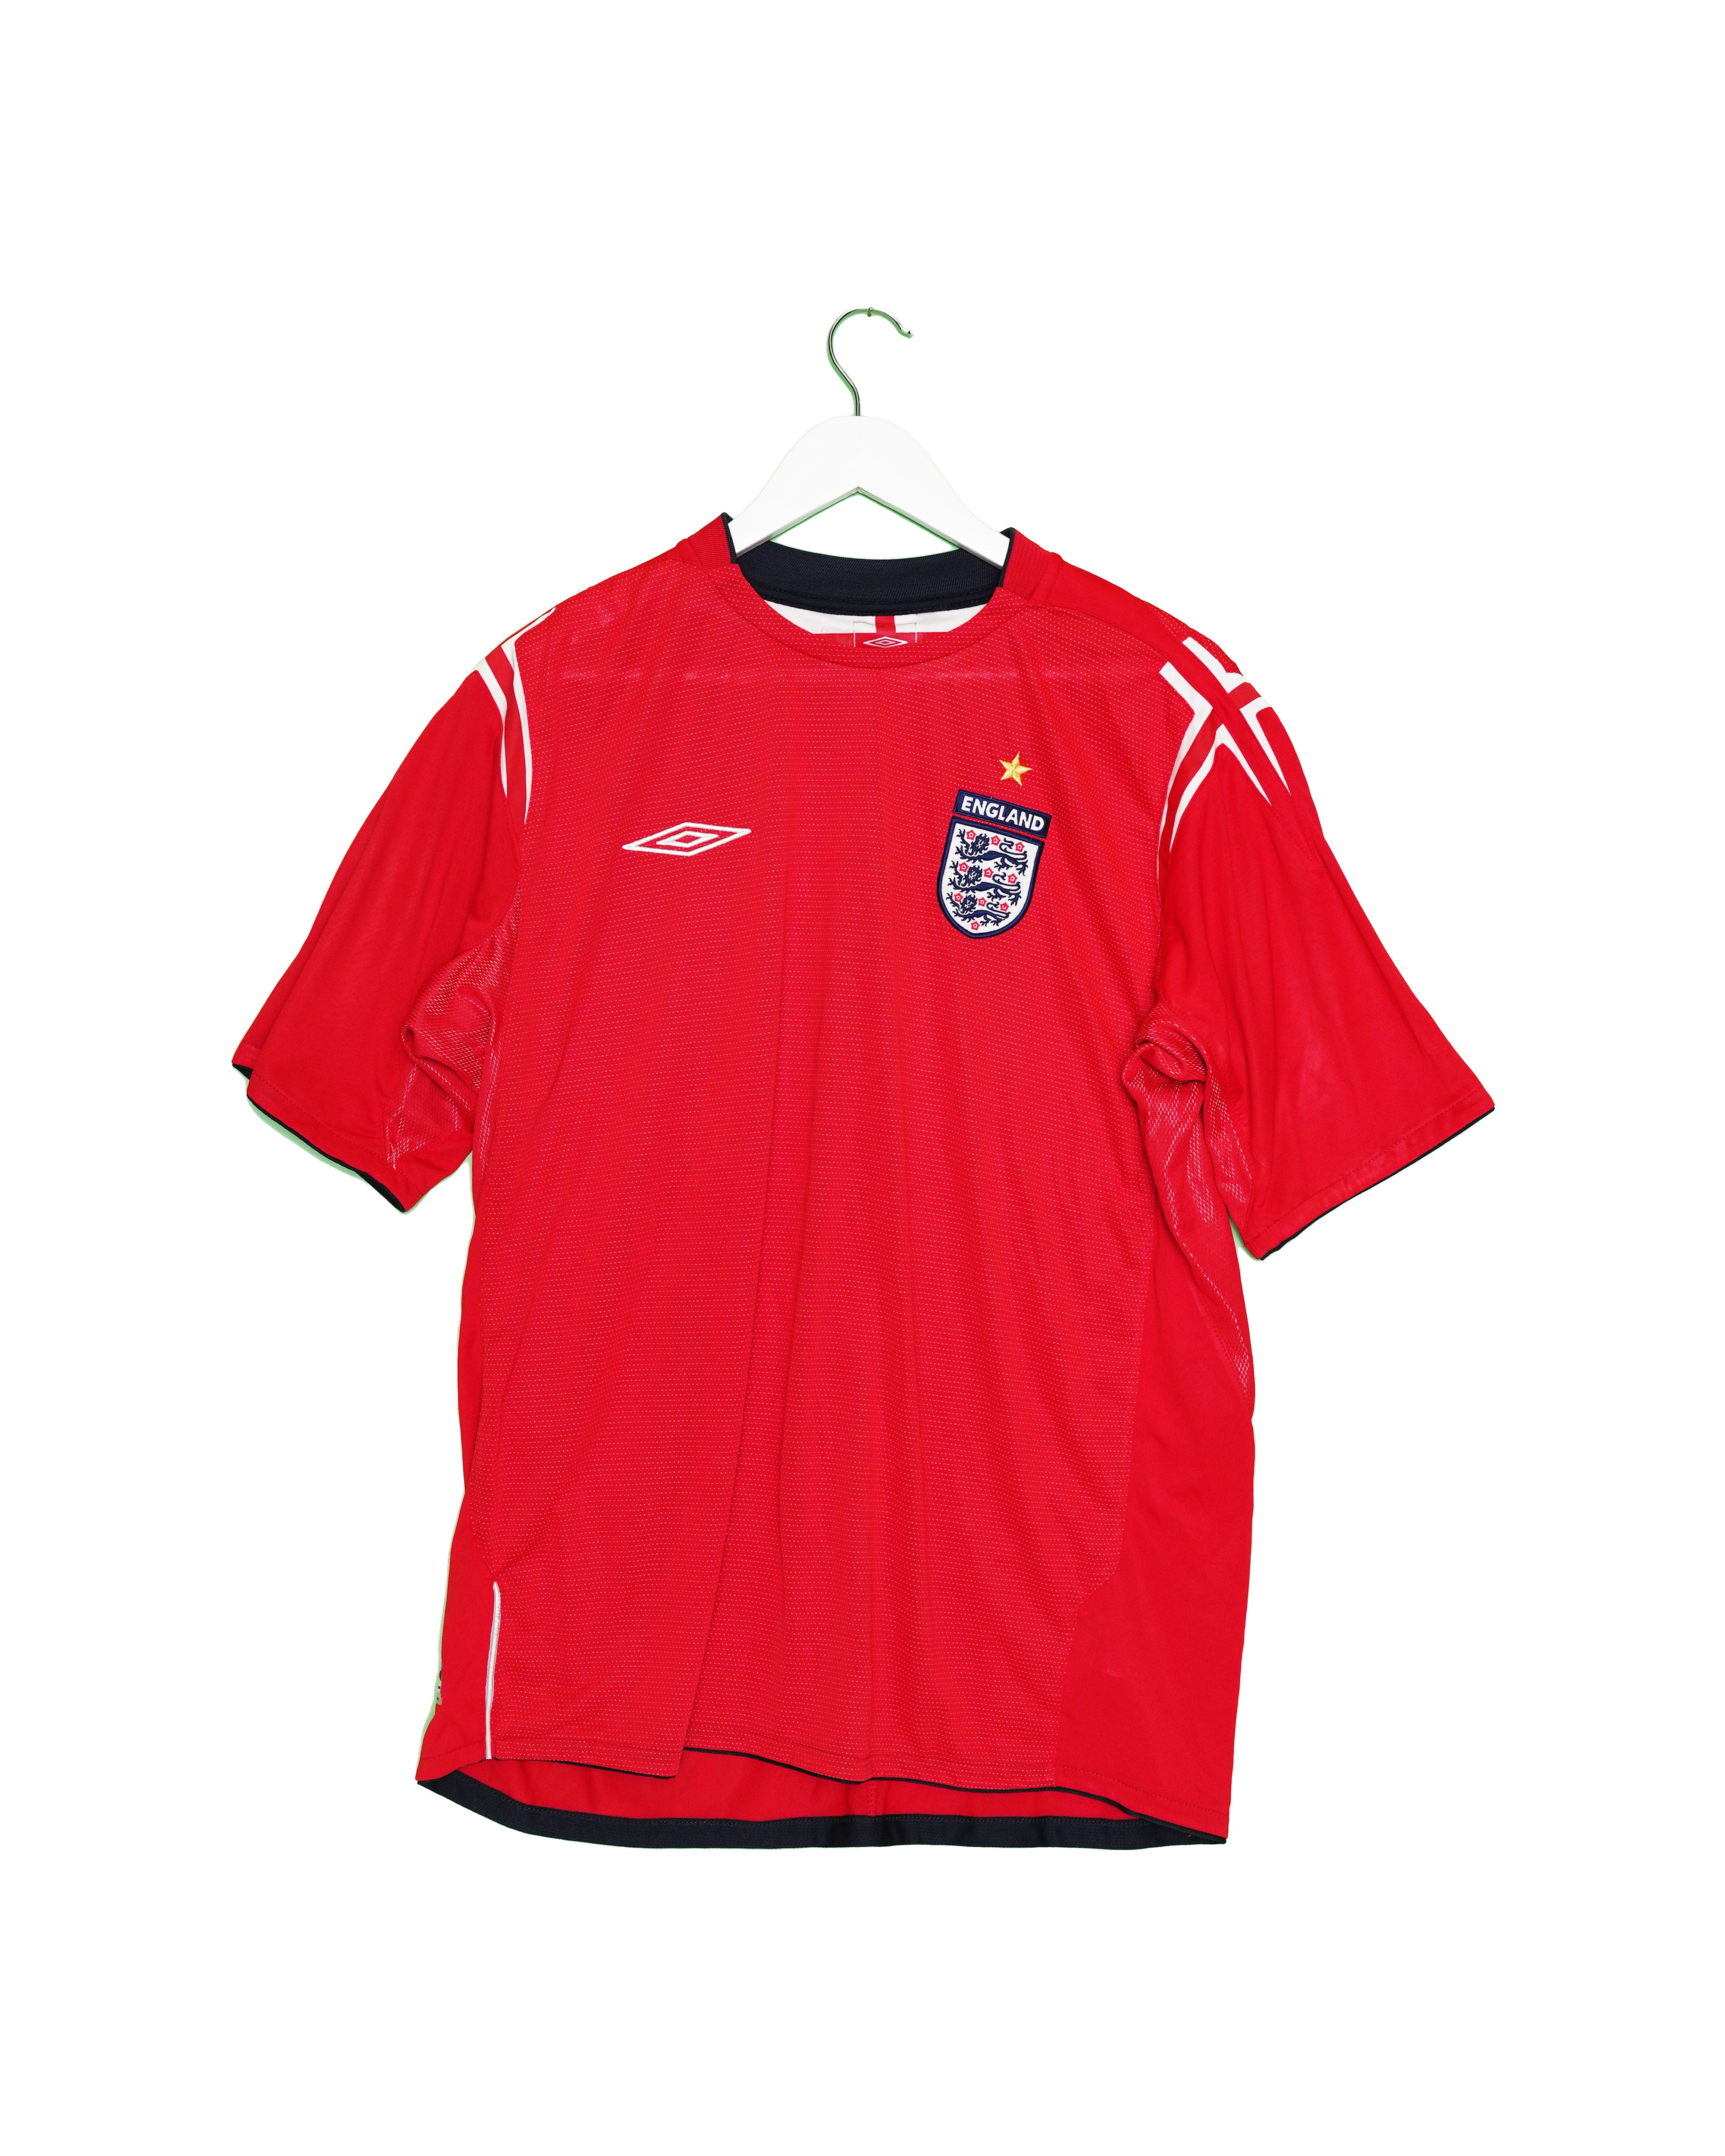 England 2004 Away Shirt - XL - #1809